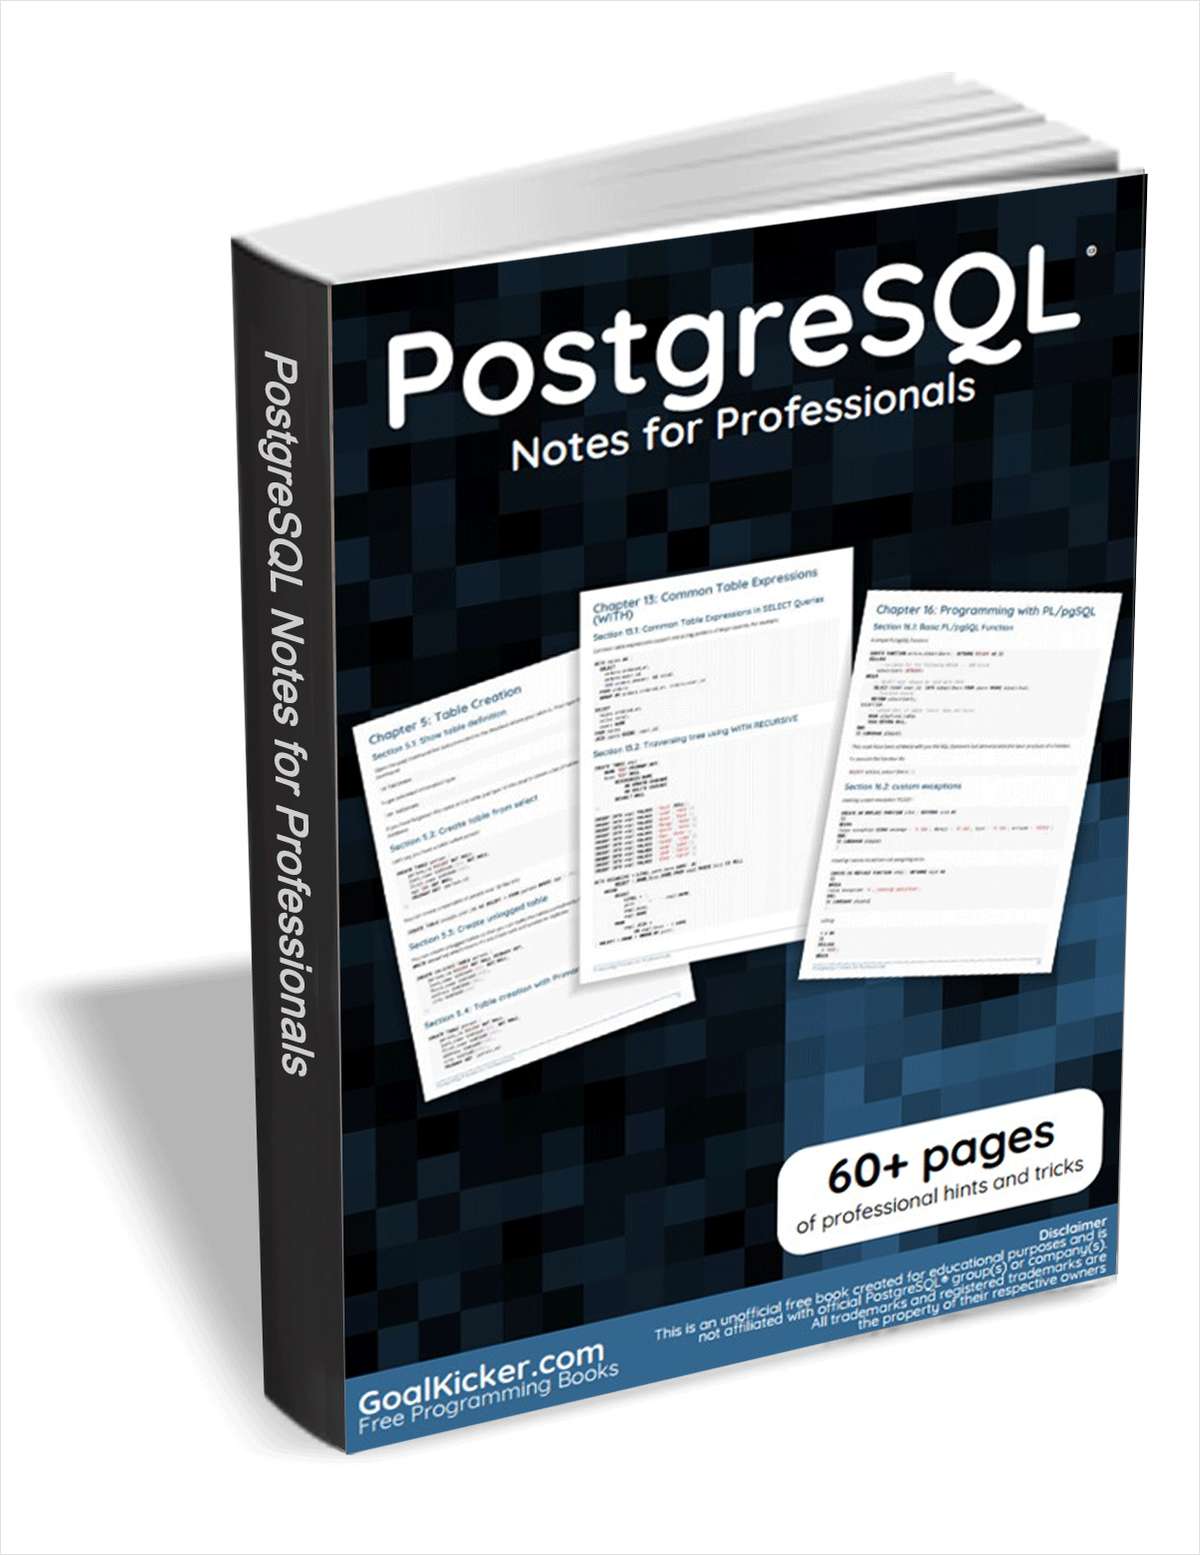 PostgreSQL Notes for Professionals